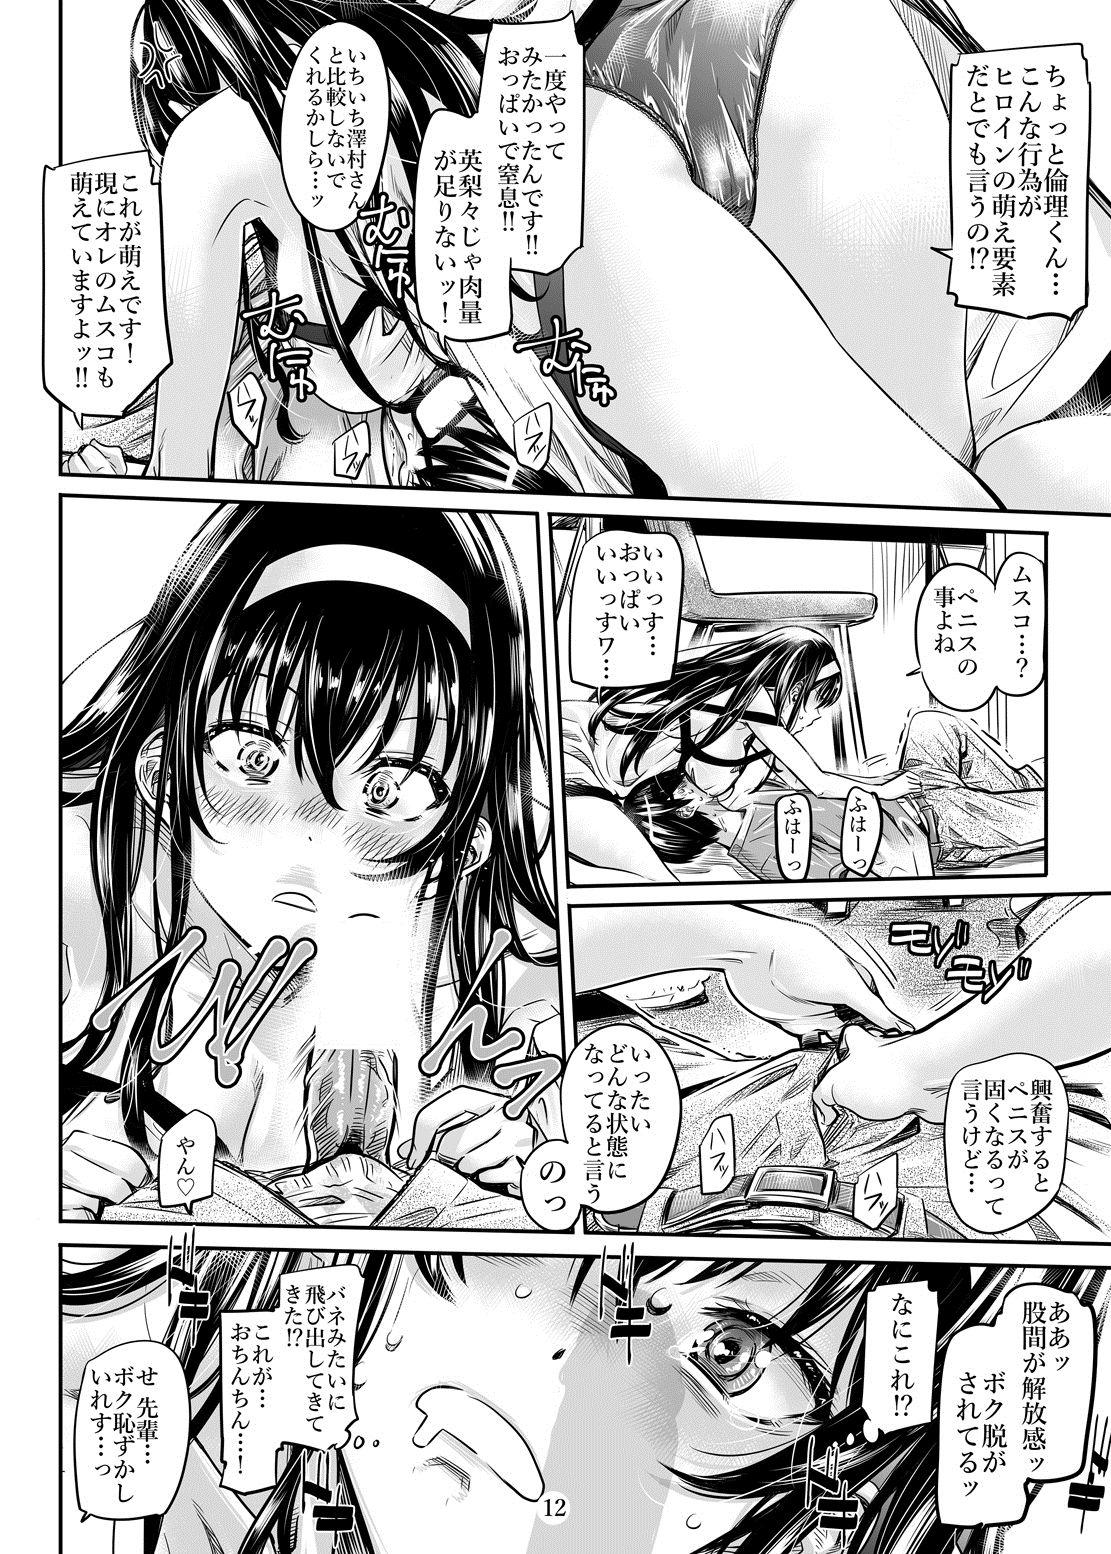 Madura Saenai Heroine Series Vol. 2 - Saenai Namaashi Senpai no Ijirikata - Saenai heroine no sodatekata Pmv - Page 11